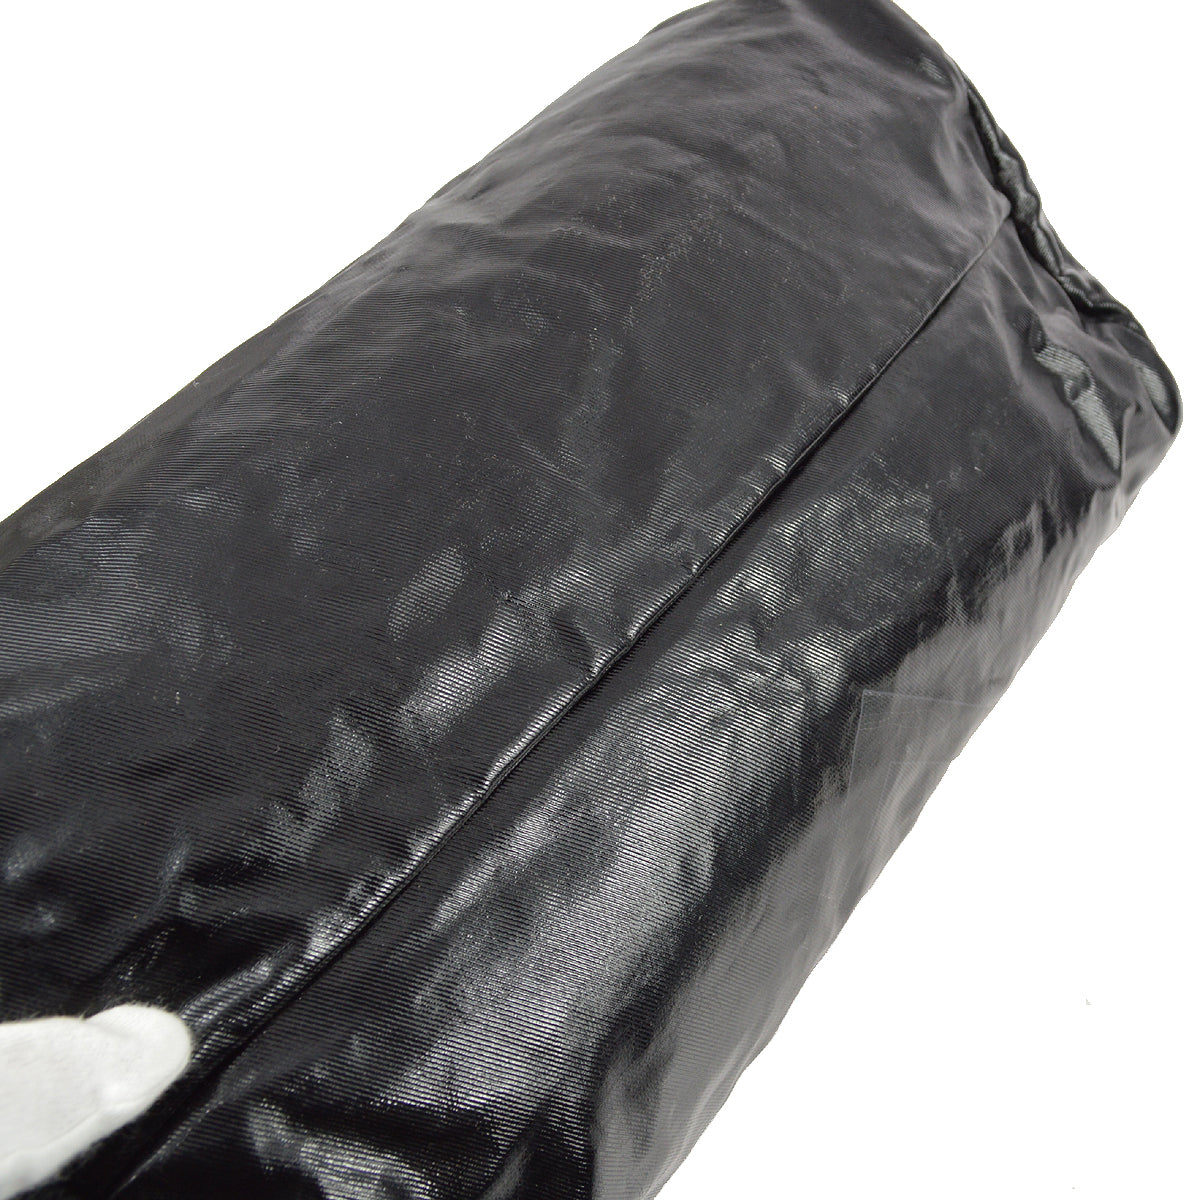 Chanel 黑色乙烯基運動系列行李箱健身包